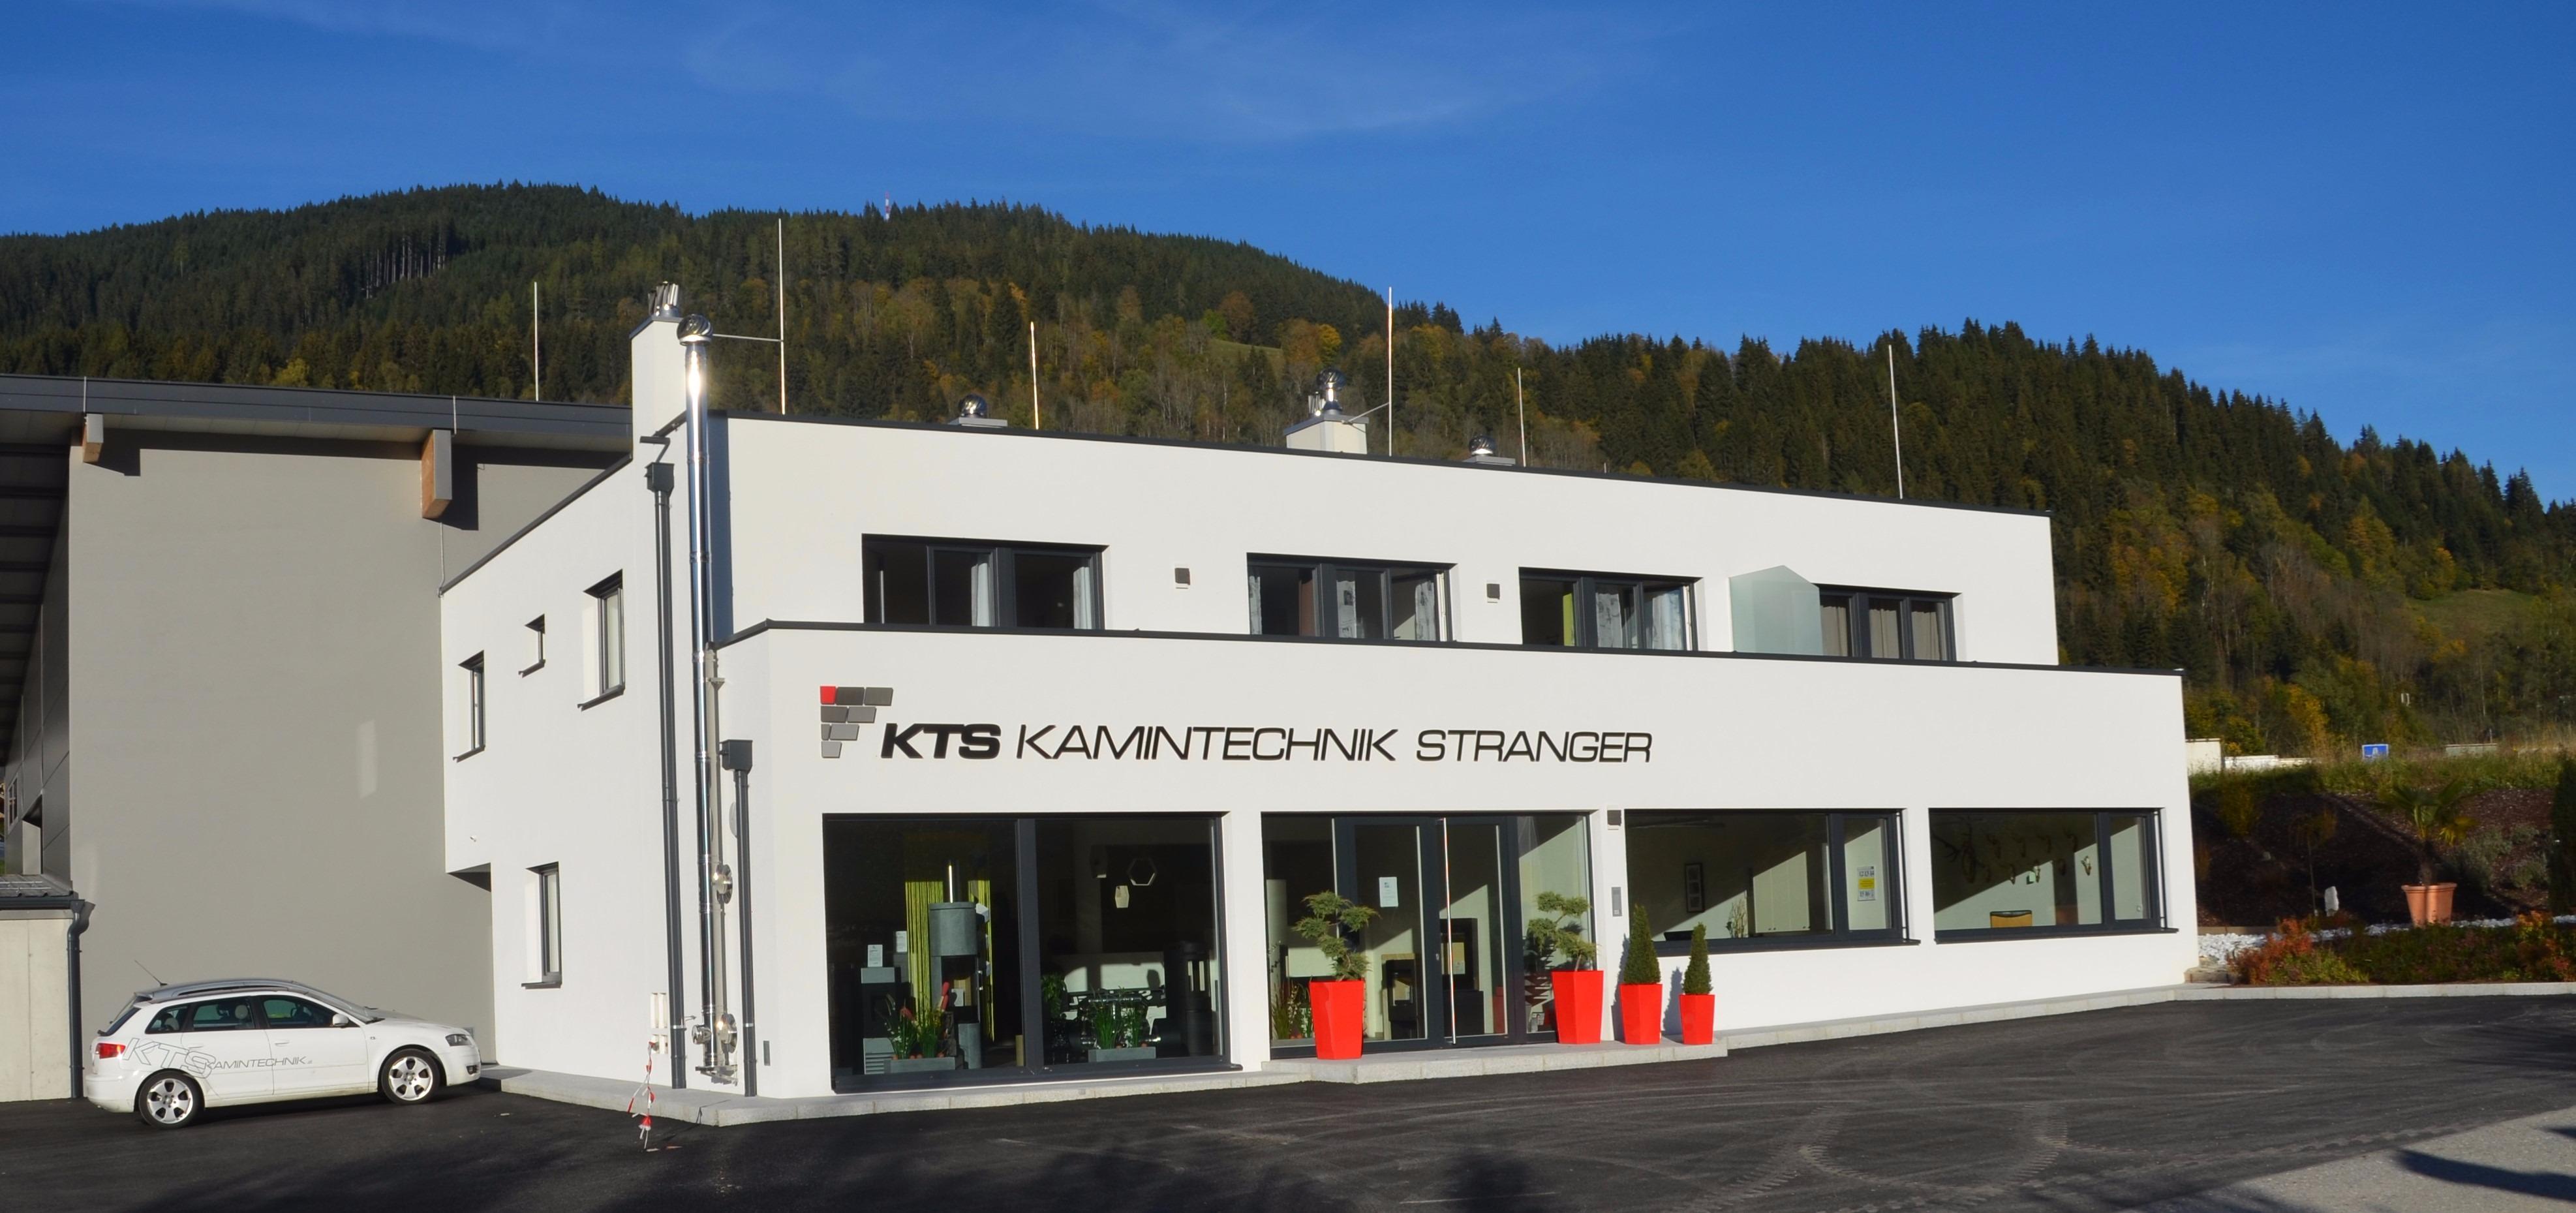 Bilder KTS Kamintechnik Stranger GmbH